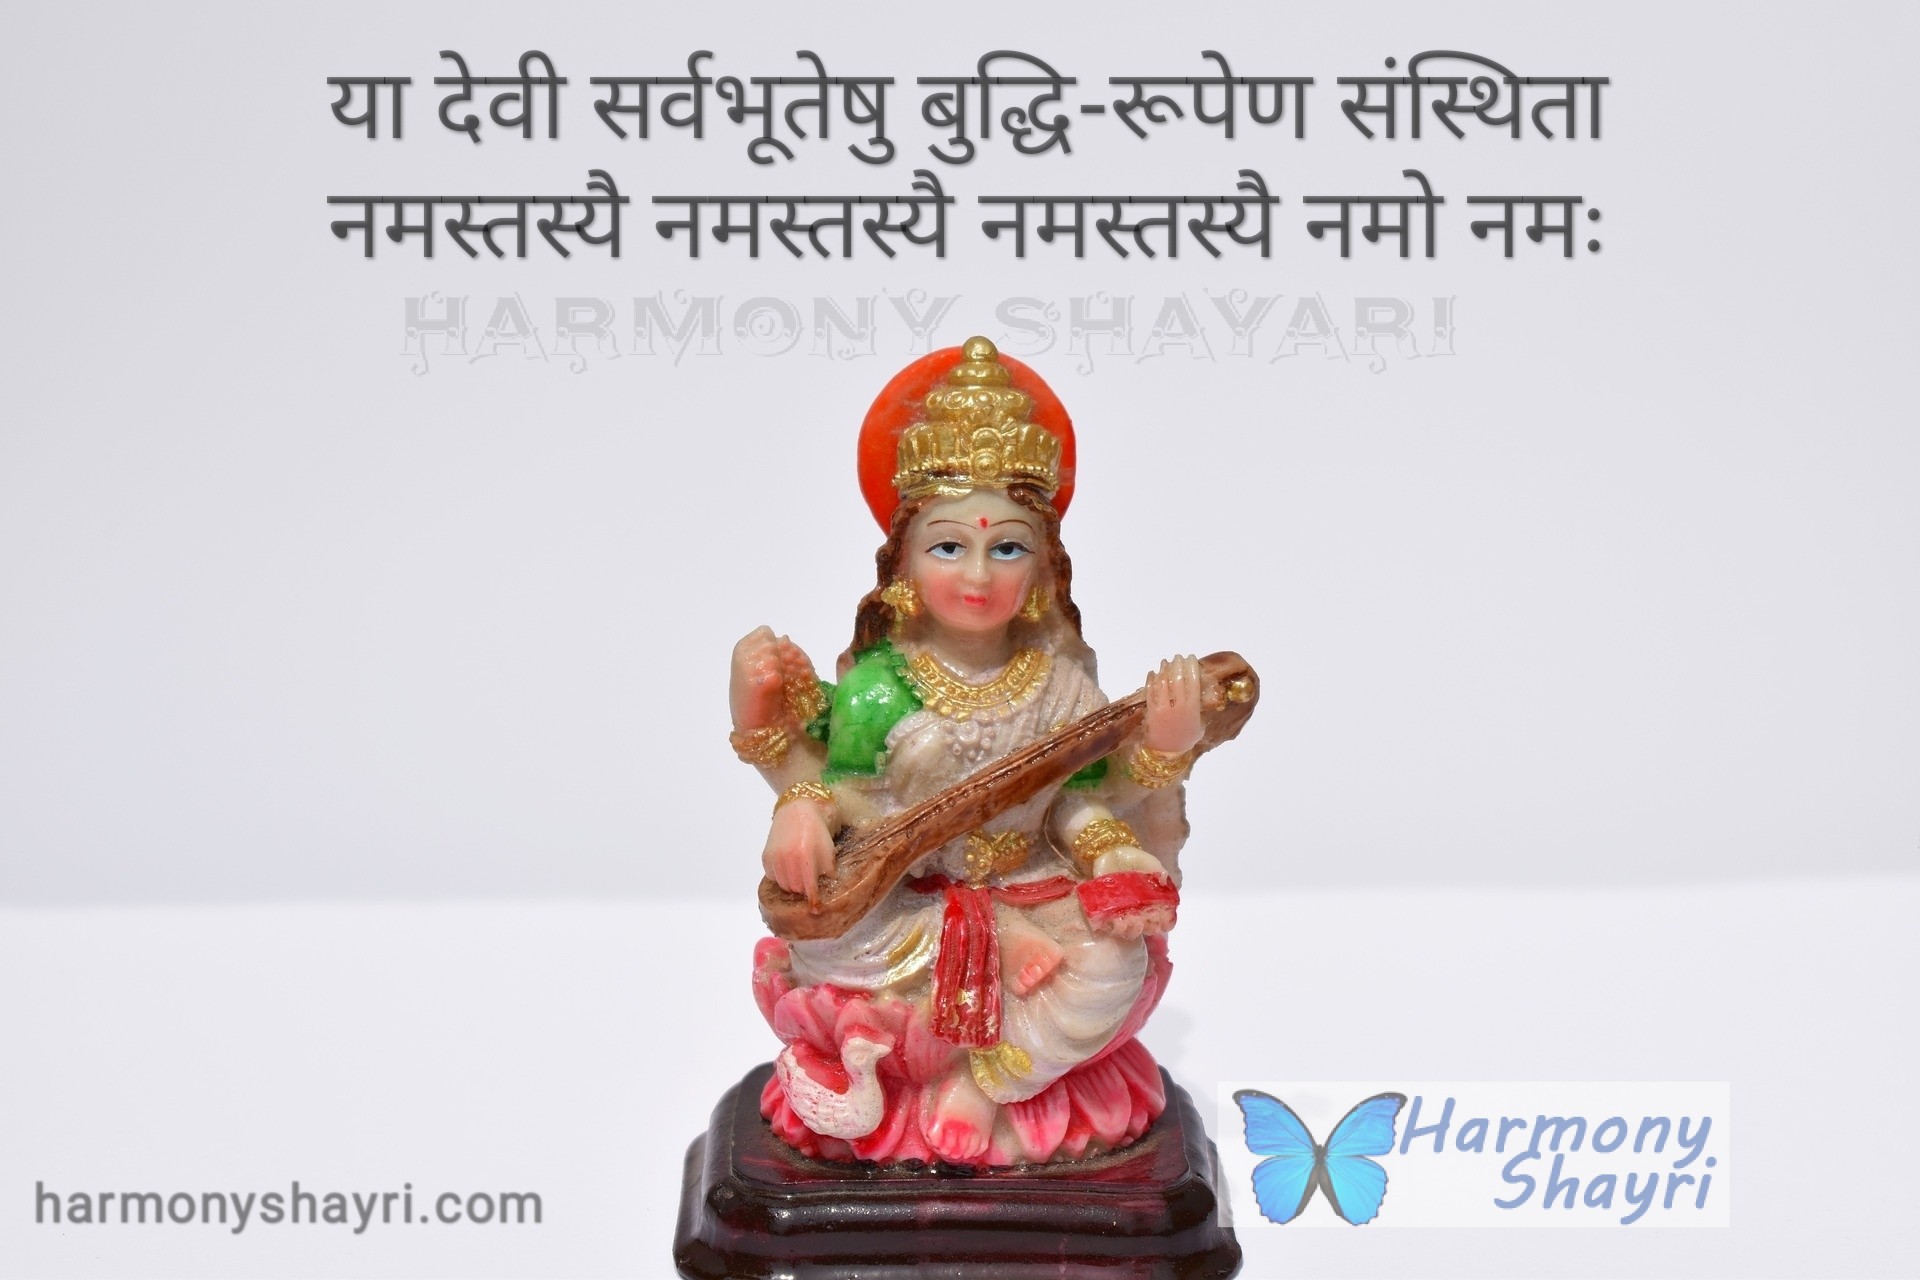 Ya devi sarvbhuteshu – Happy Basant Panchmi